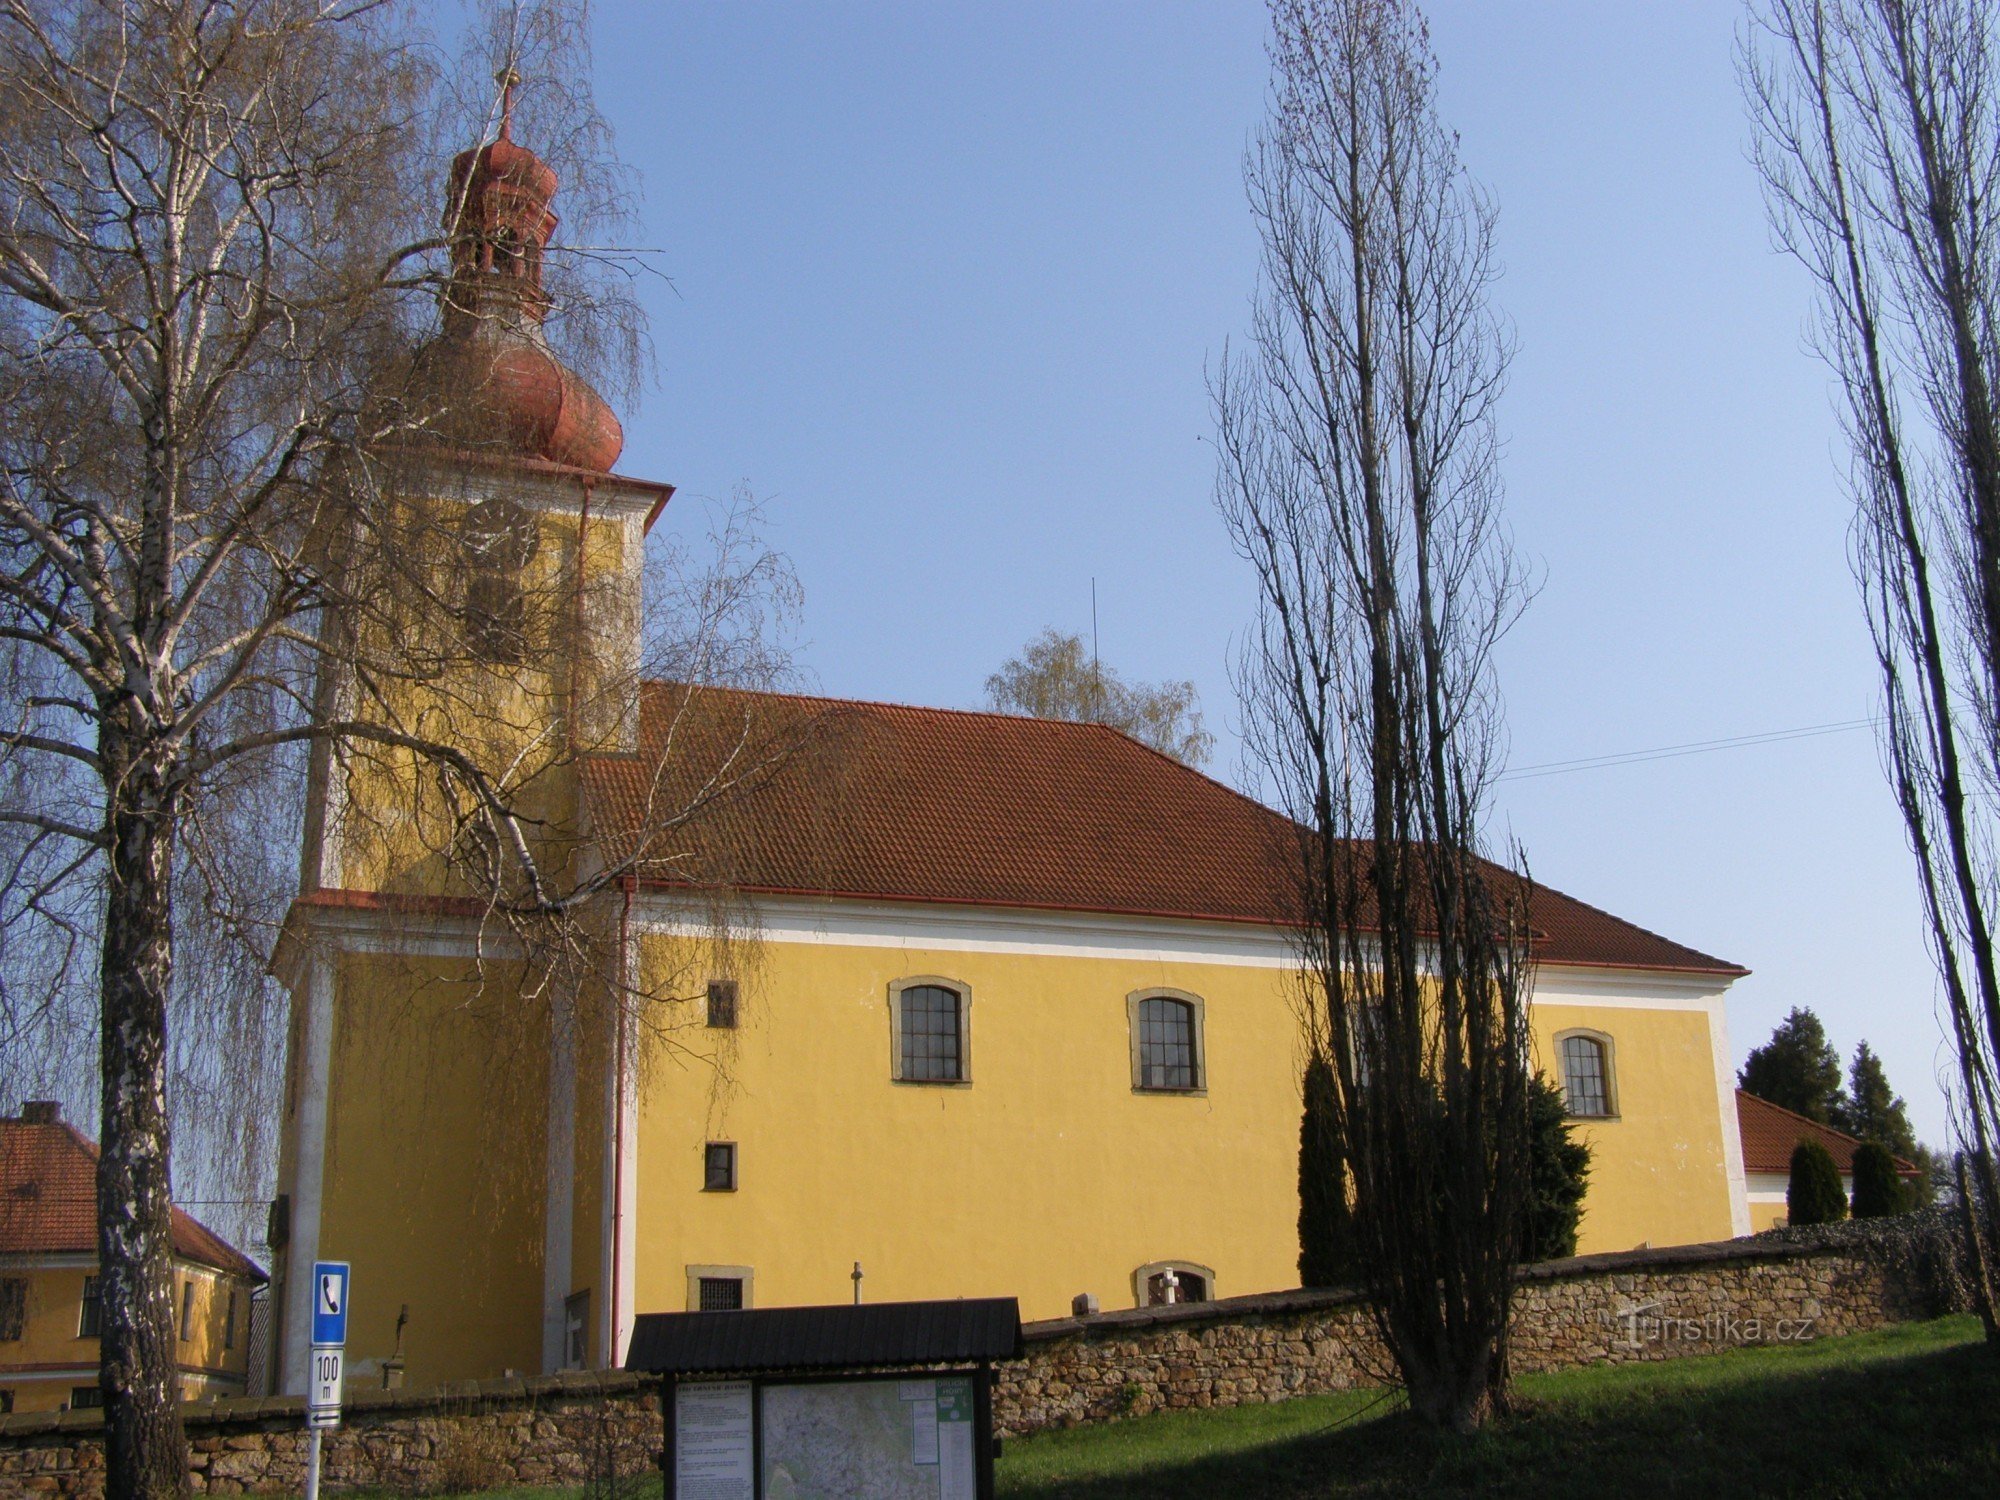 Rybná nad Zdobnicí - crkva sv. Jakub